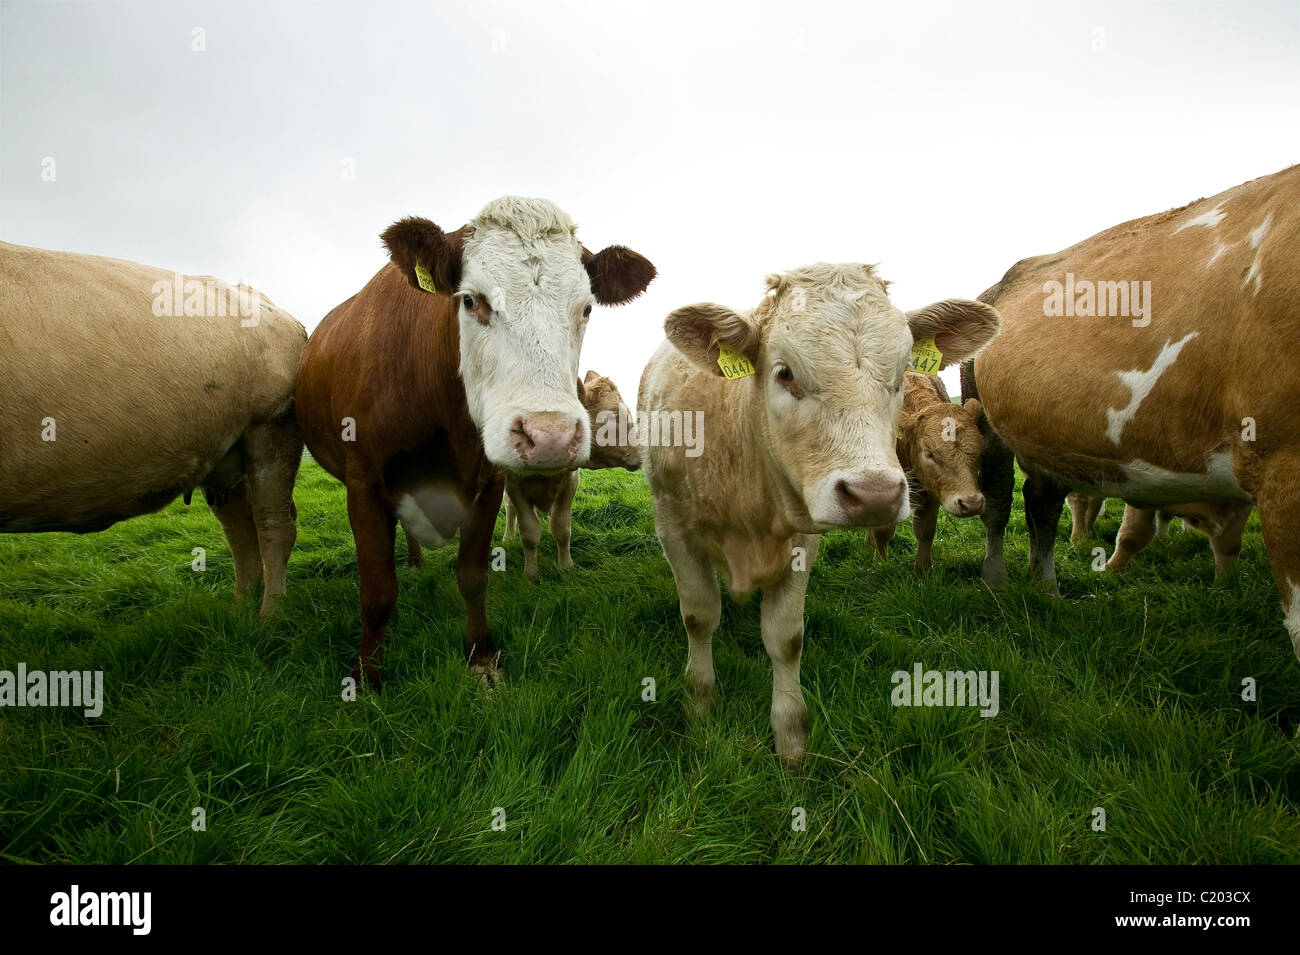 Cows on a farm Stock Photo